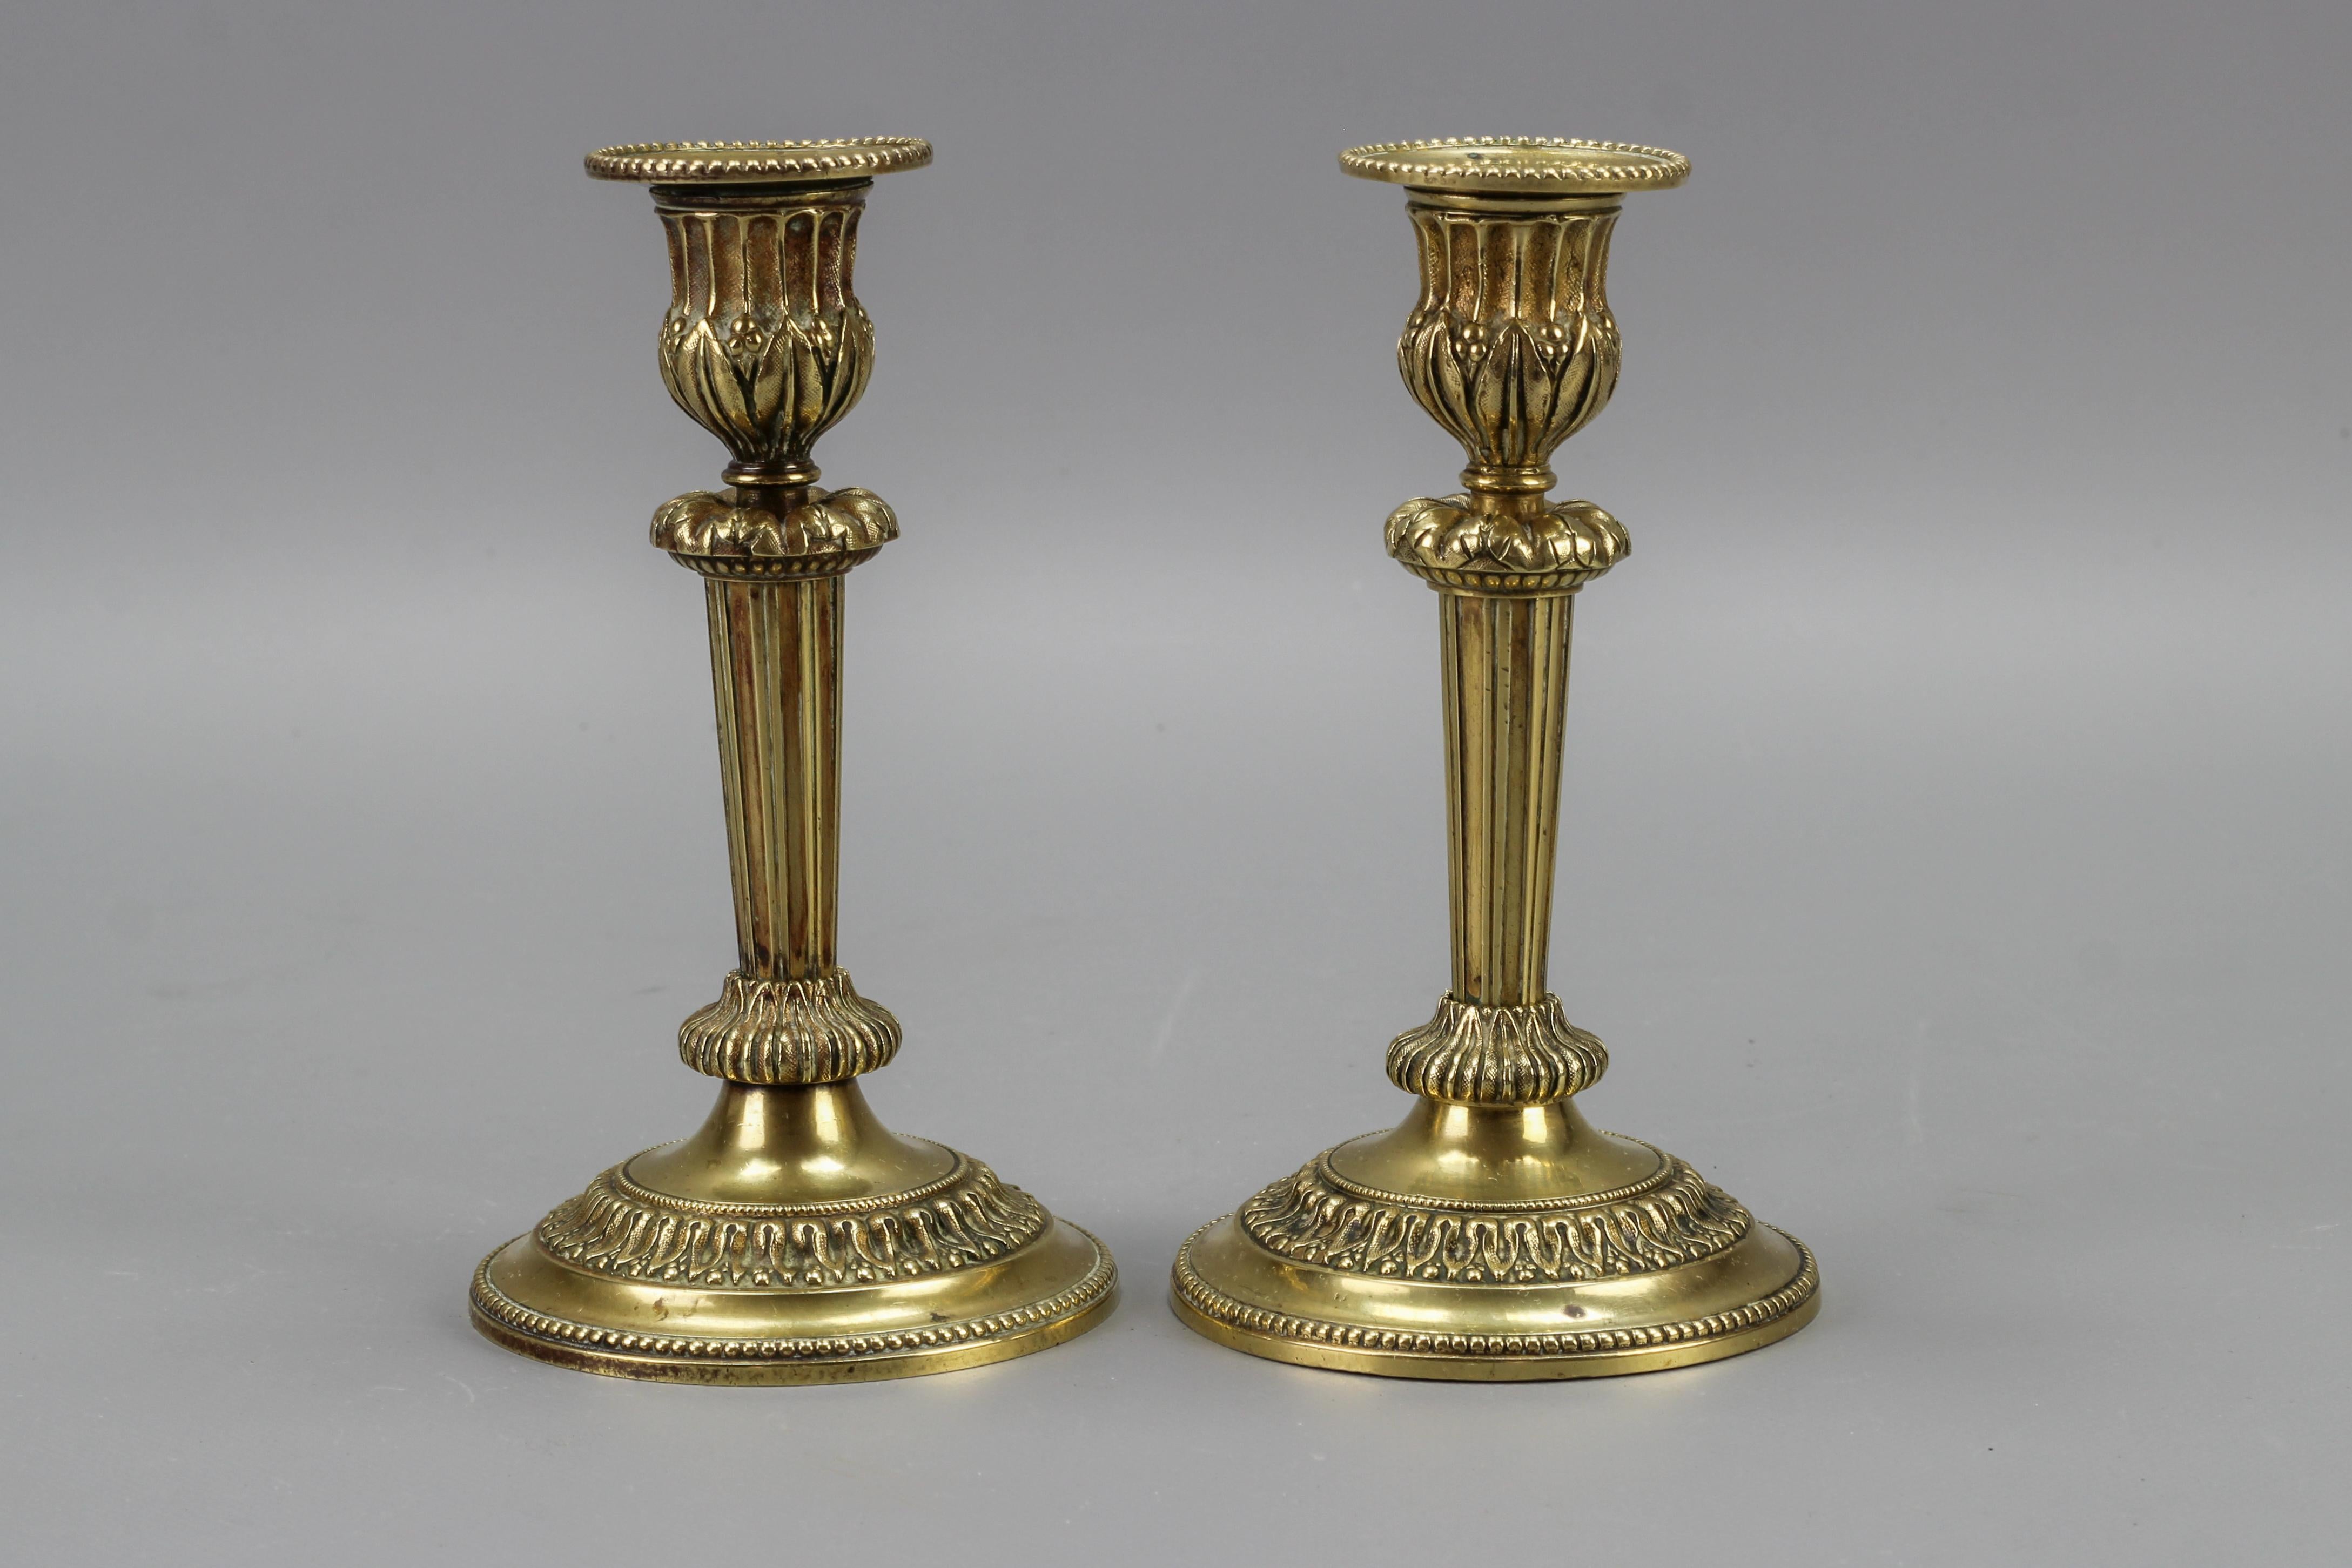 Ein elegantes Paar französischer Messing-Kerzenständer im Louis-XVI-Stil aus den 1920er Jahren. Diese hübschen und kompakten Kerzenhalter sind mit Blattmotiven verziert und haben einen spitz zulaufenden, kannelierten Schaft mit einem